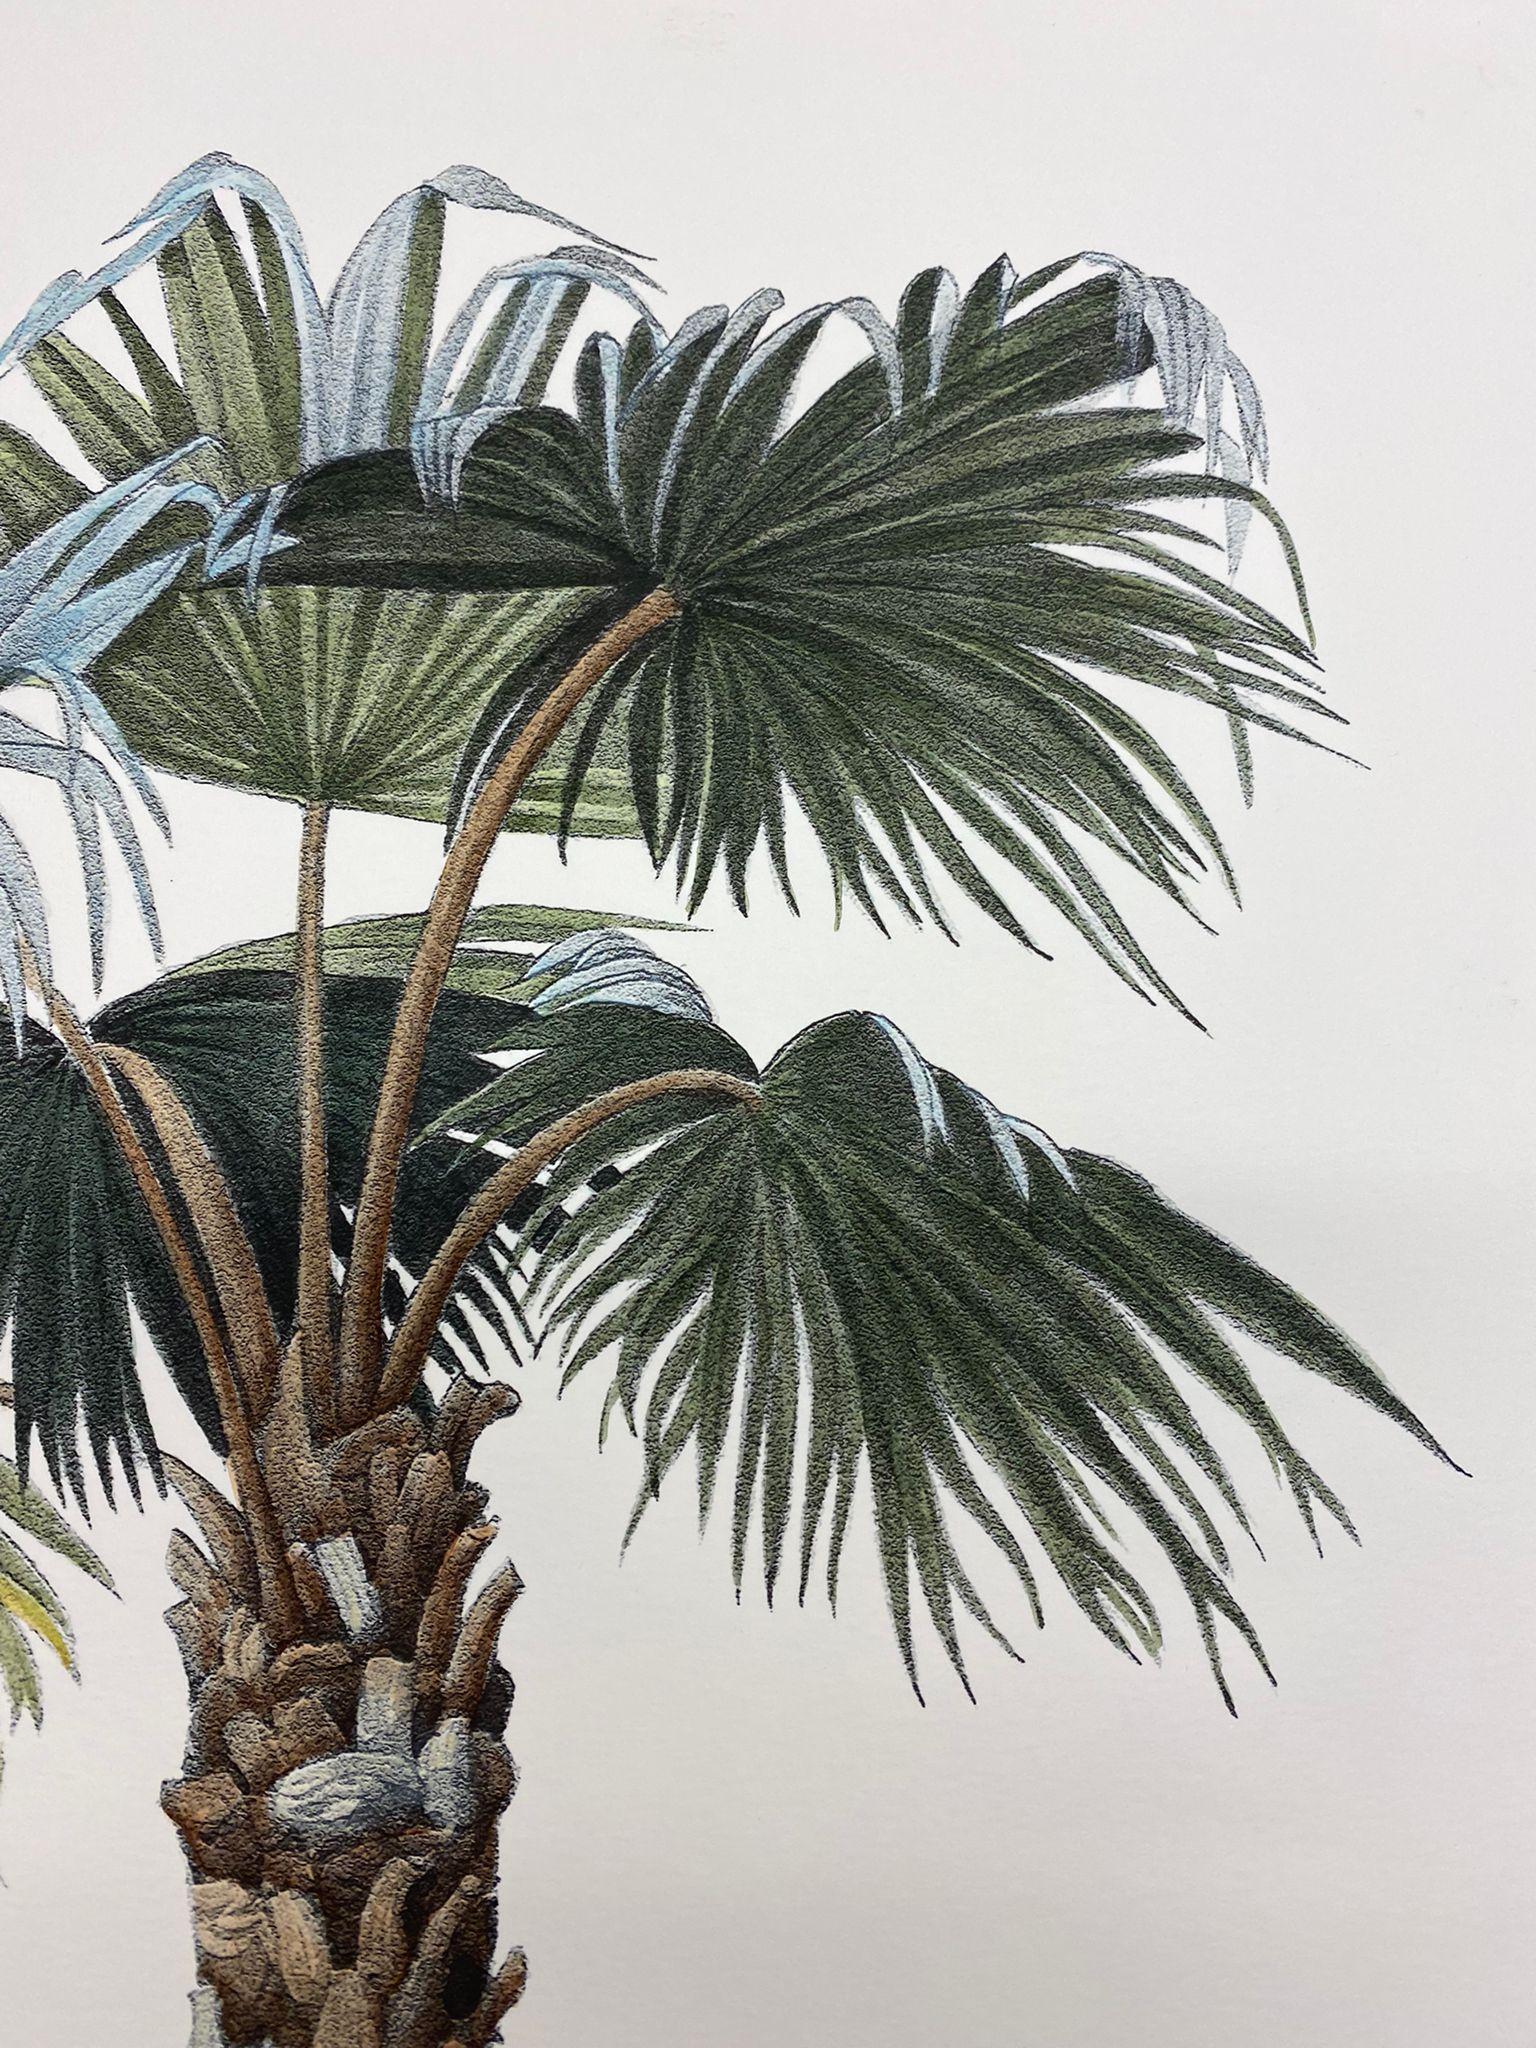 Eleganter handaquarellierter Druck, der Butia Capitata aus der Familie der Palmen darstellt.

Dieser Druck im botanischen Stil ist in 4 verschiedenen natürlichen Darstellungen erhältlich, um eine helle und fröhliche Komposition zu schaffen:
-